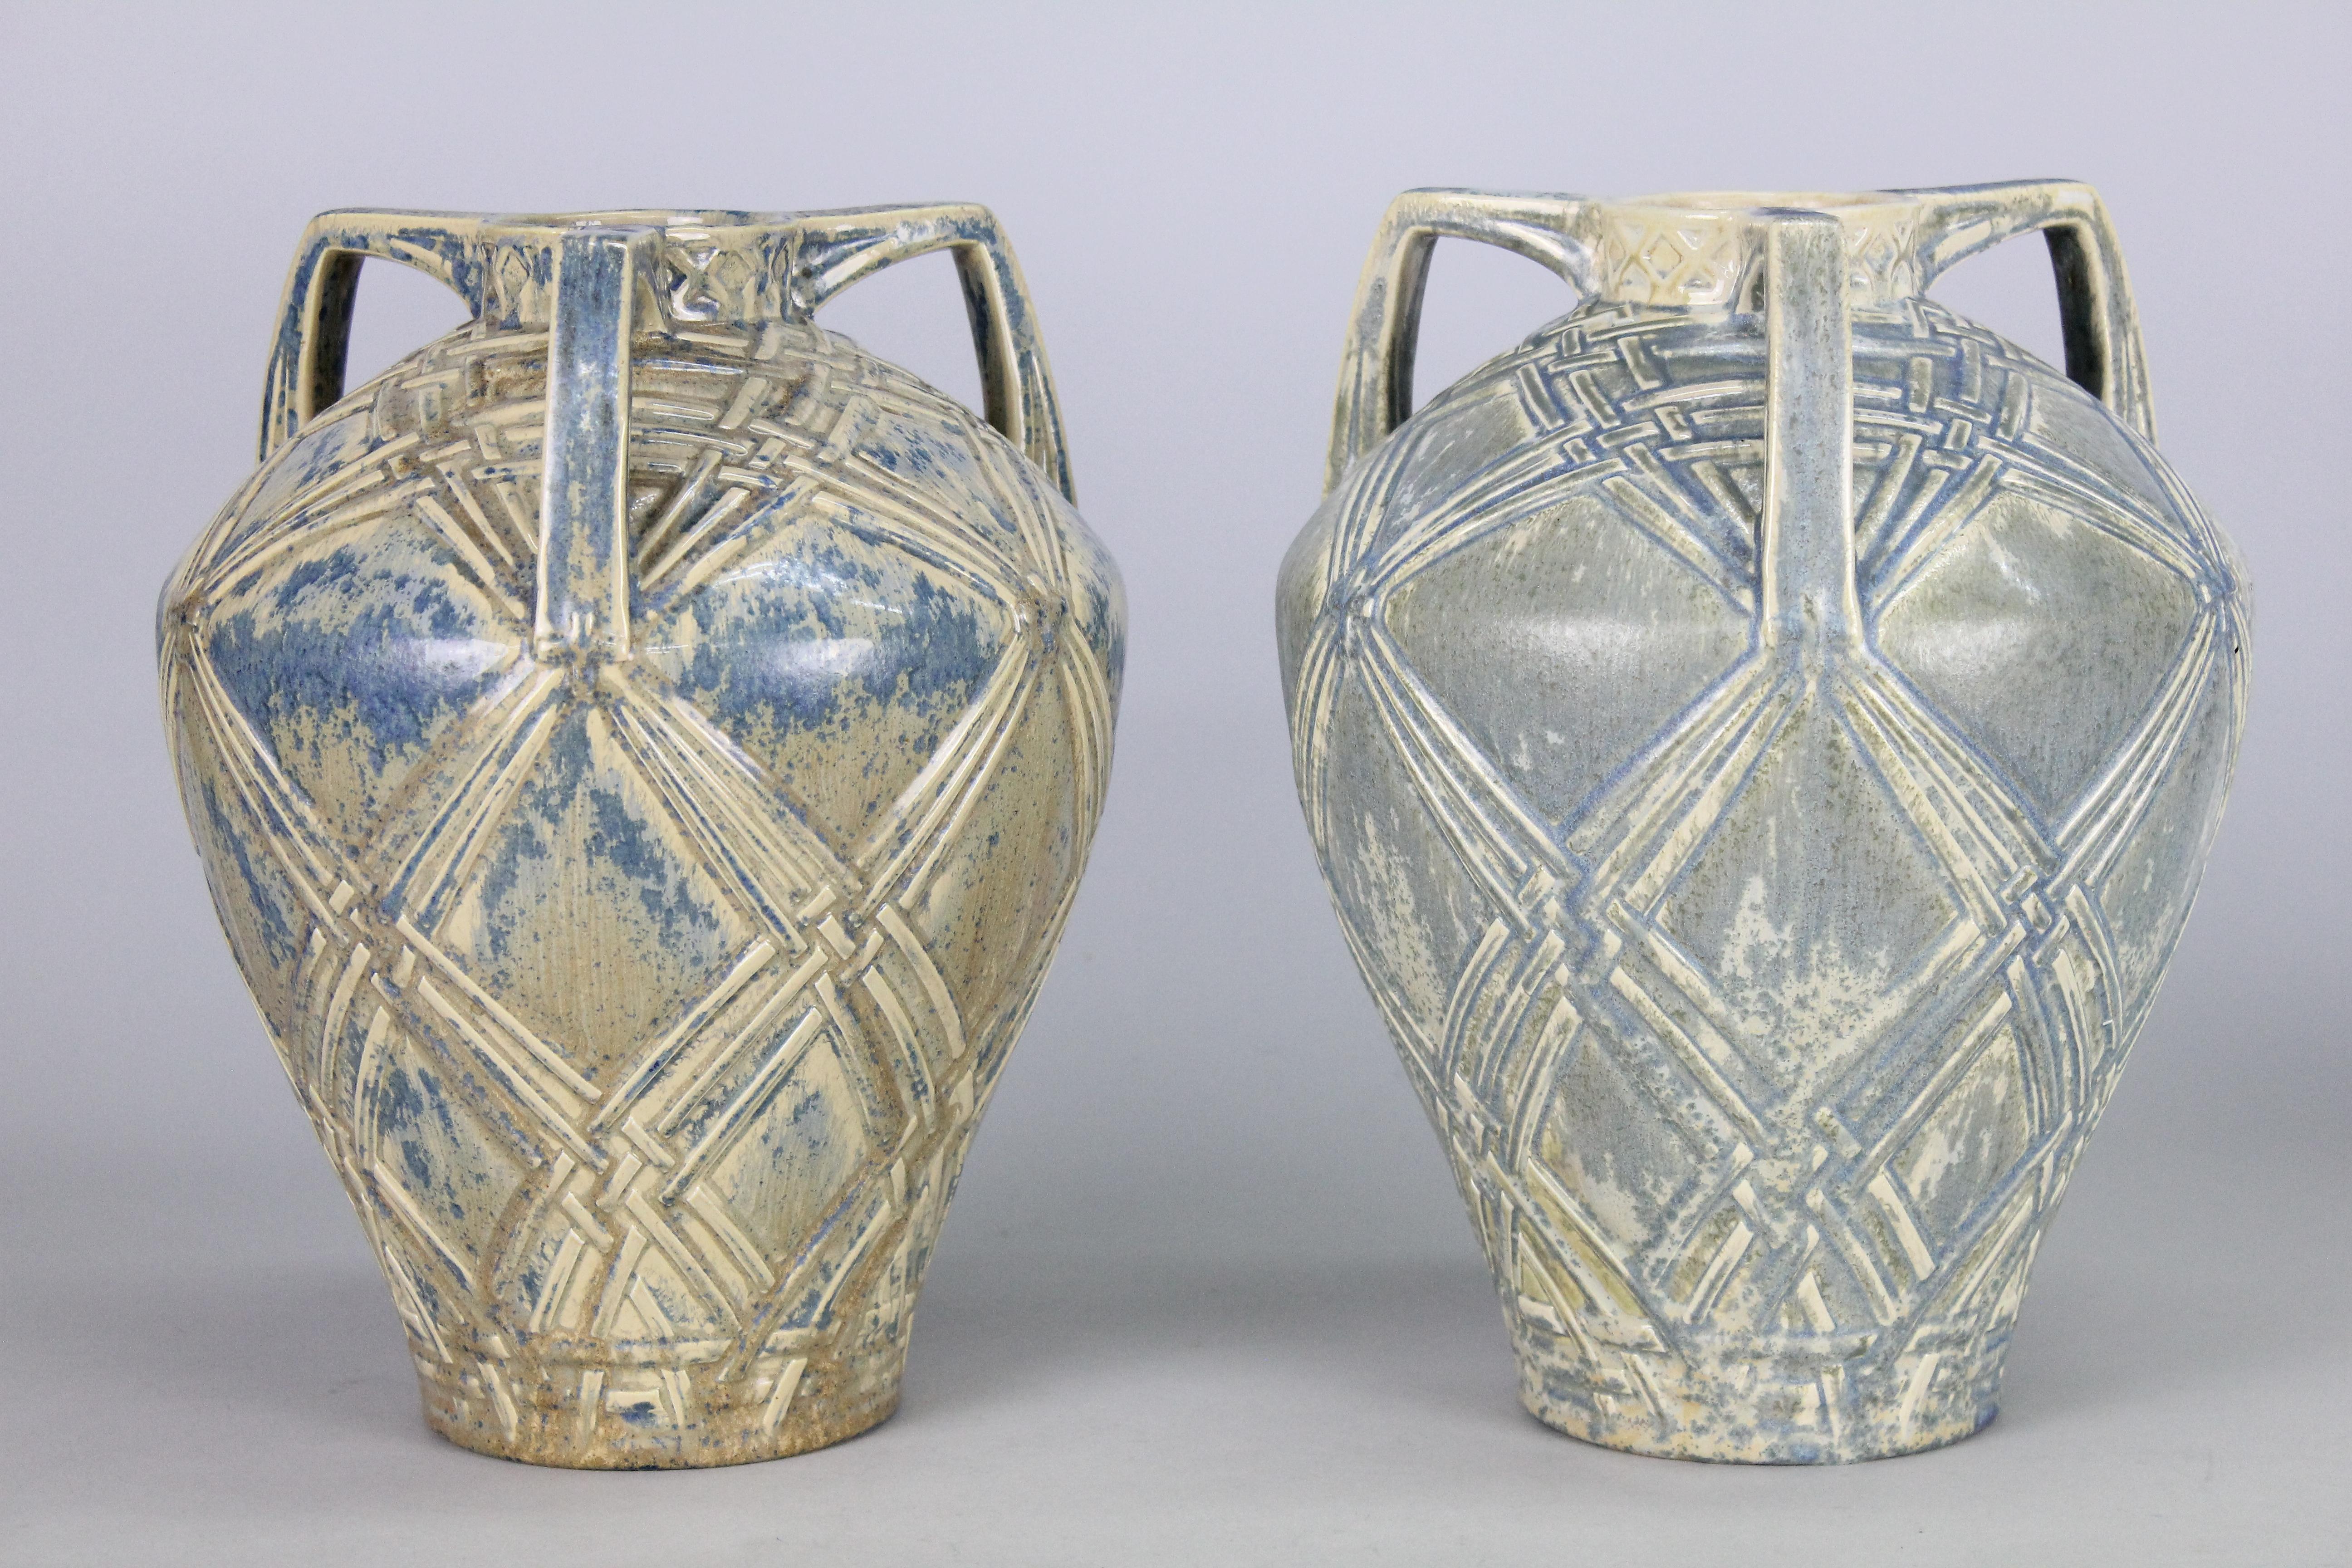 Ein sehr ungewöhnliches Paar Rörstrand-Vasen aus Steingut. Hergestellt zwischen 1920-1936.
Höchstwahrscheinlich von Alf Wallander entworfen. Einige geringfügige Unterschiede in der Farbe der Glasur.
Signiert mit Fabrikmarke 